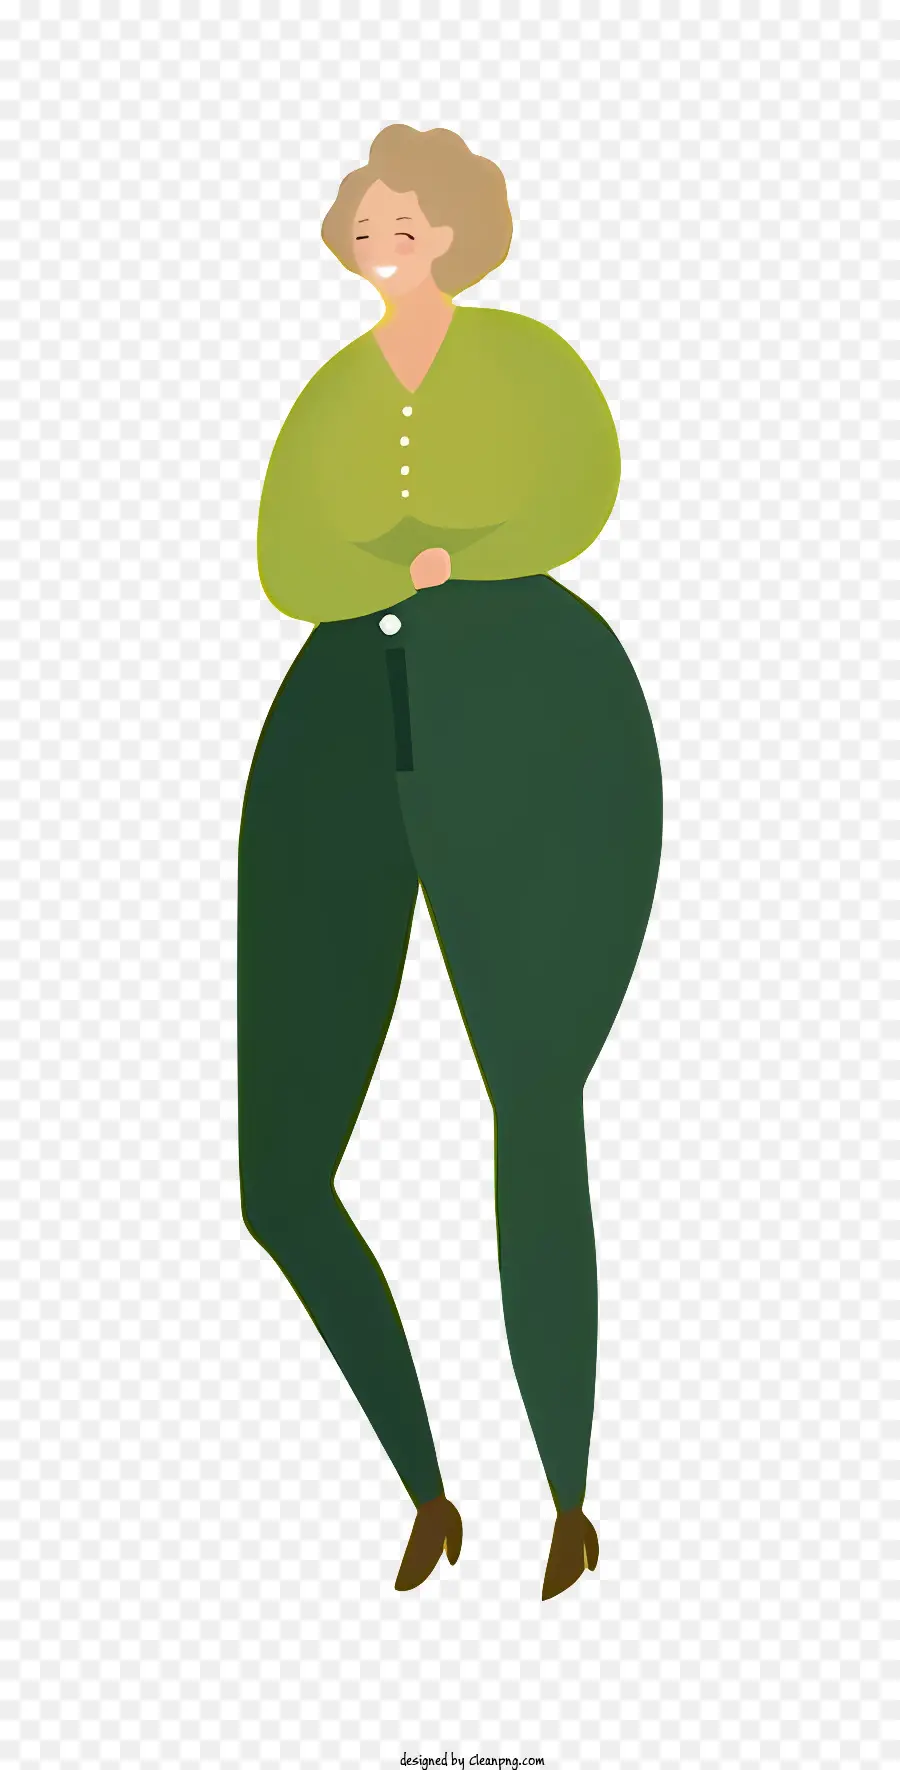 Donna del corpo grasso camicia verde pantaloni verdi braccia incrociate - Donna con camicia verde in piedi con le braccia incrociate